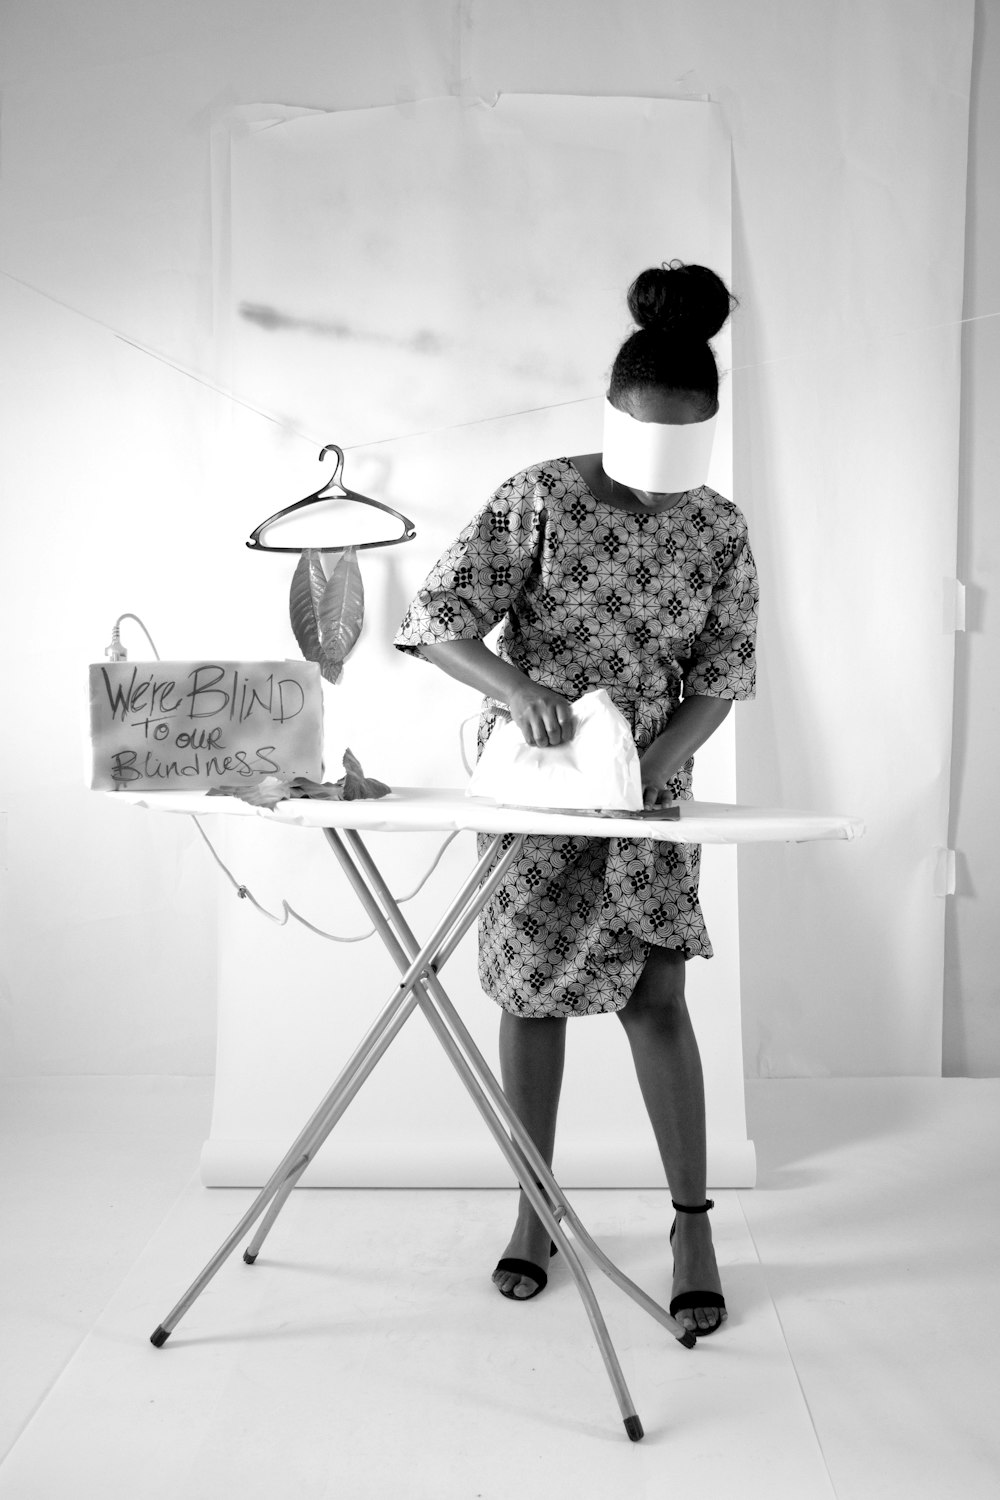 Una mujer planchando ropa en una tabla de planchar